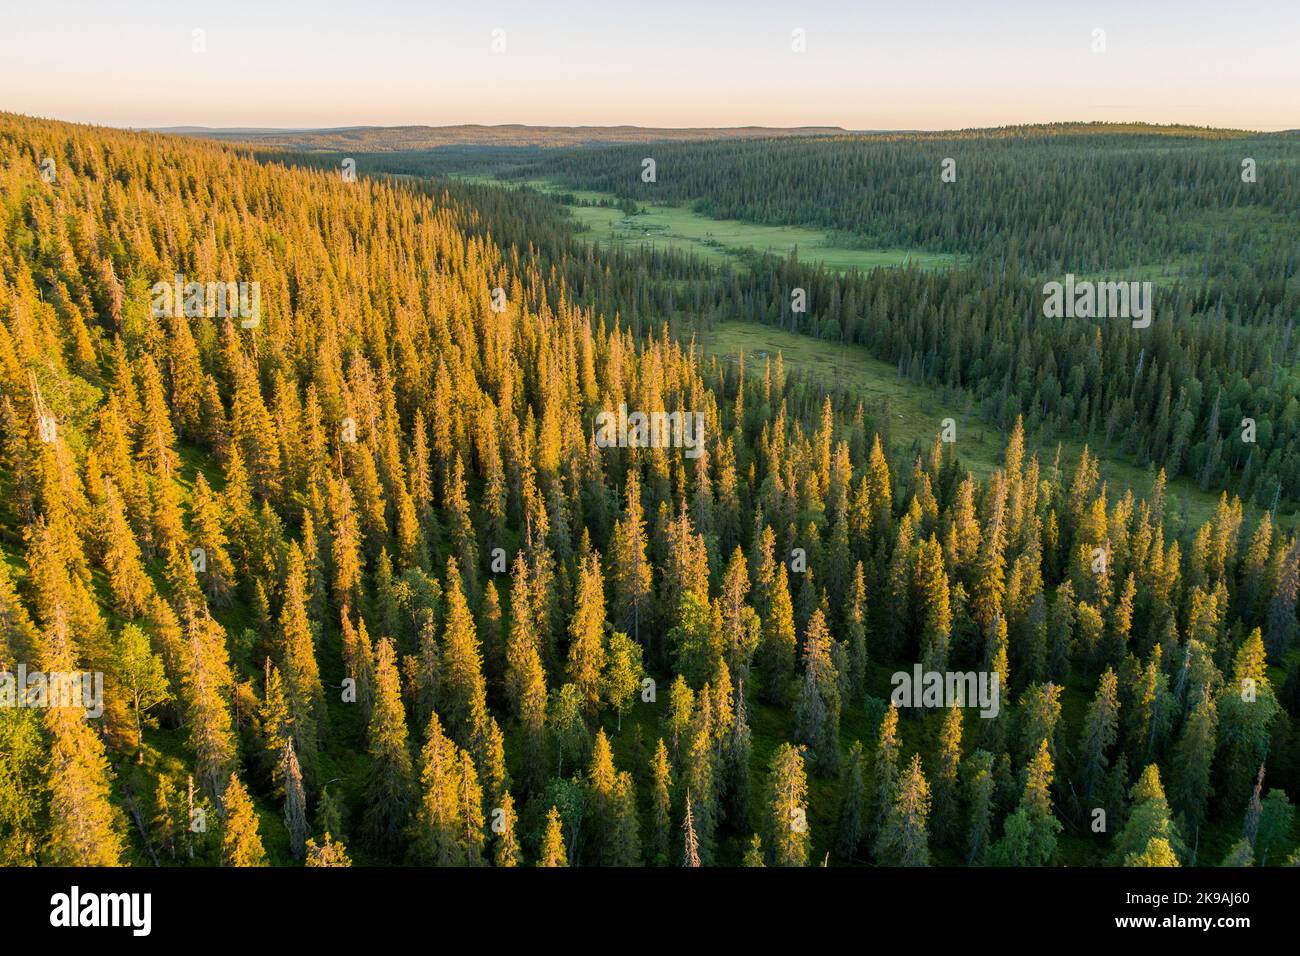 Colline couverte de forêt de taïga pendant un coucher de soleil estival dans le parc national de Riisitunturi, dans le nord de la Finlande Banque D'Images